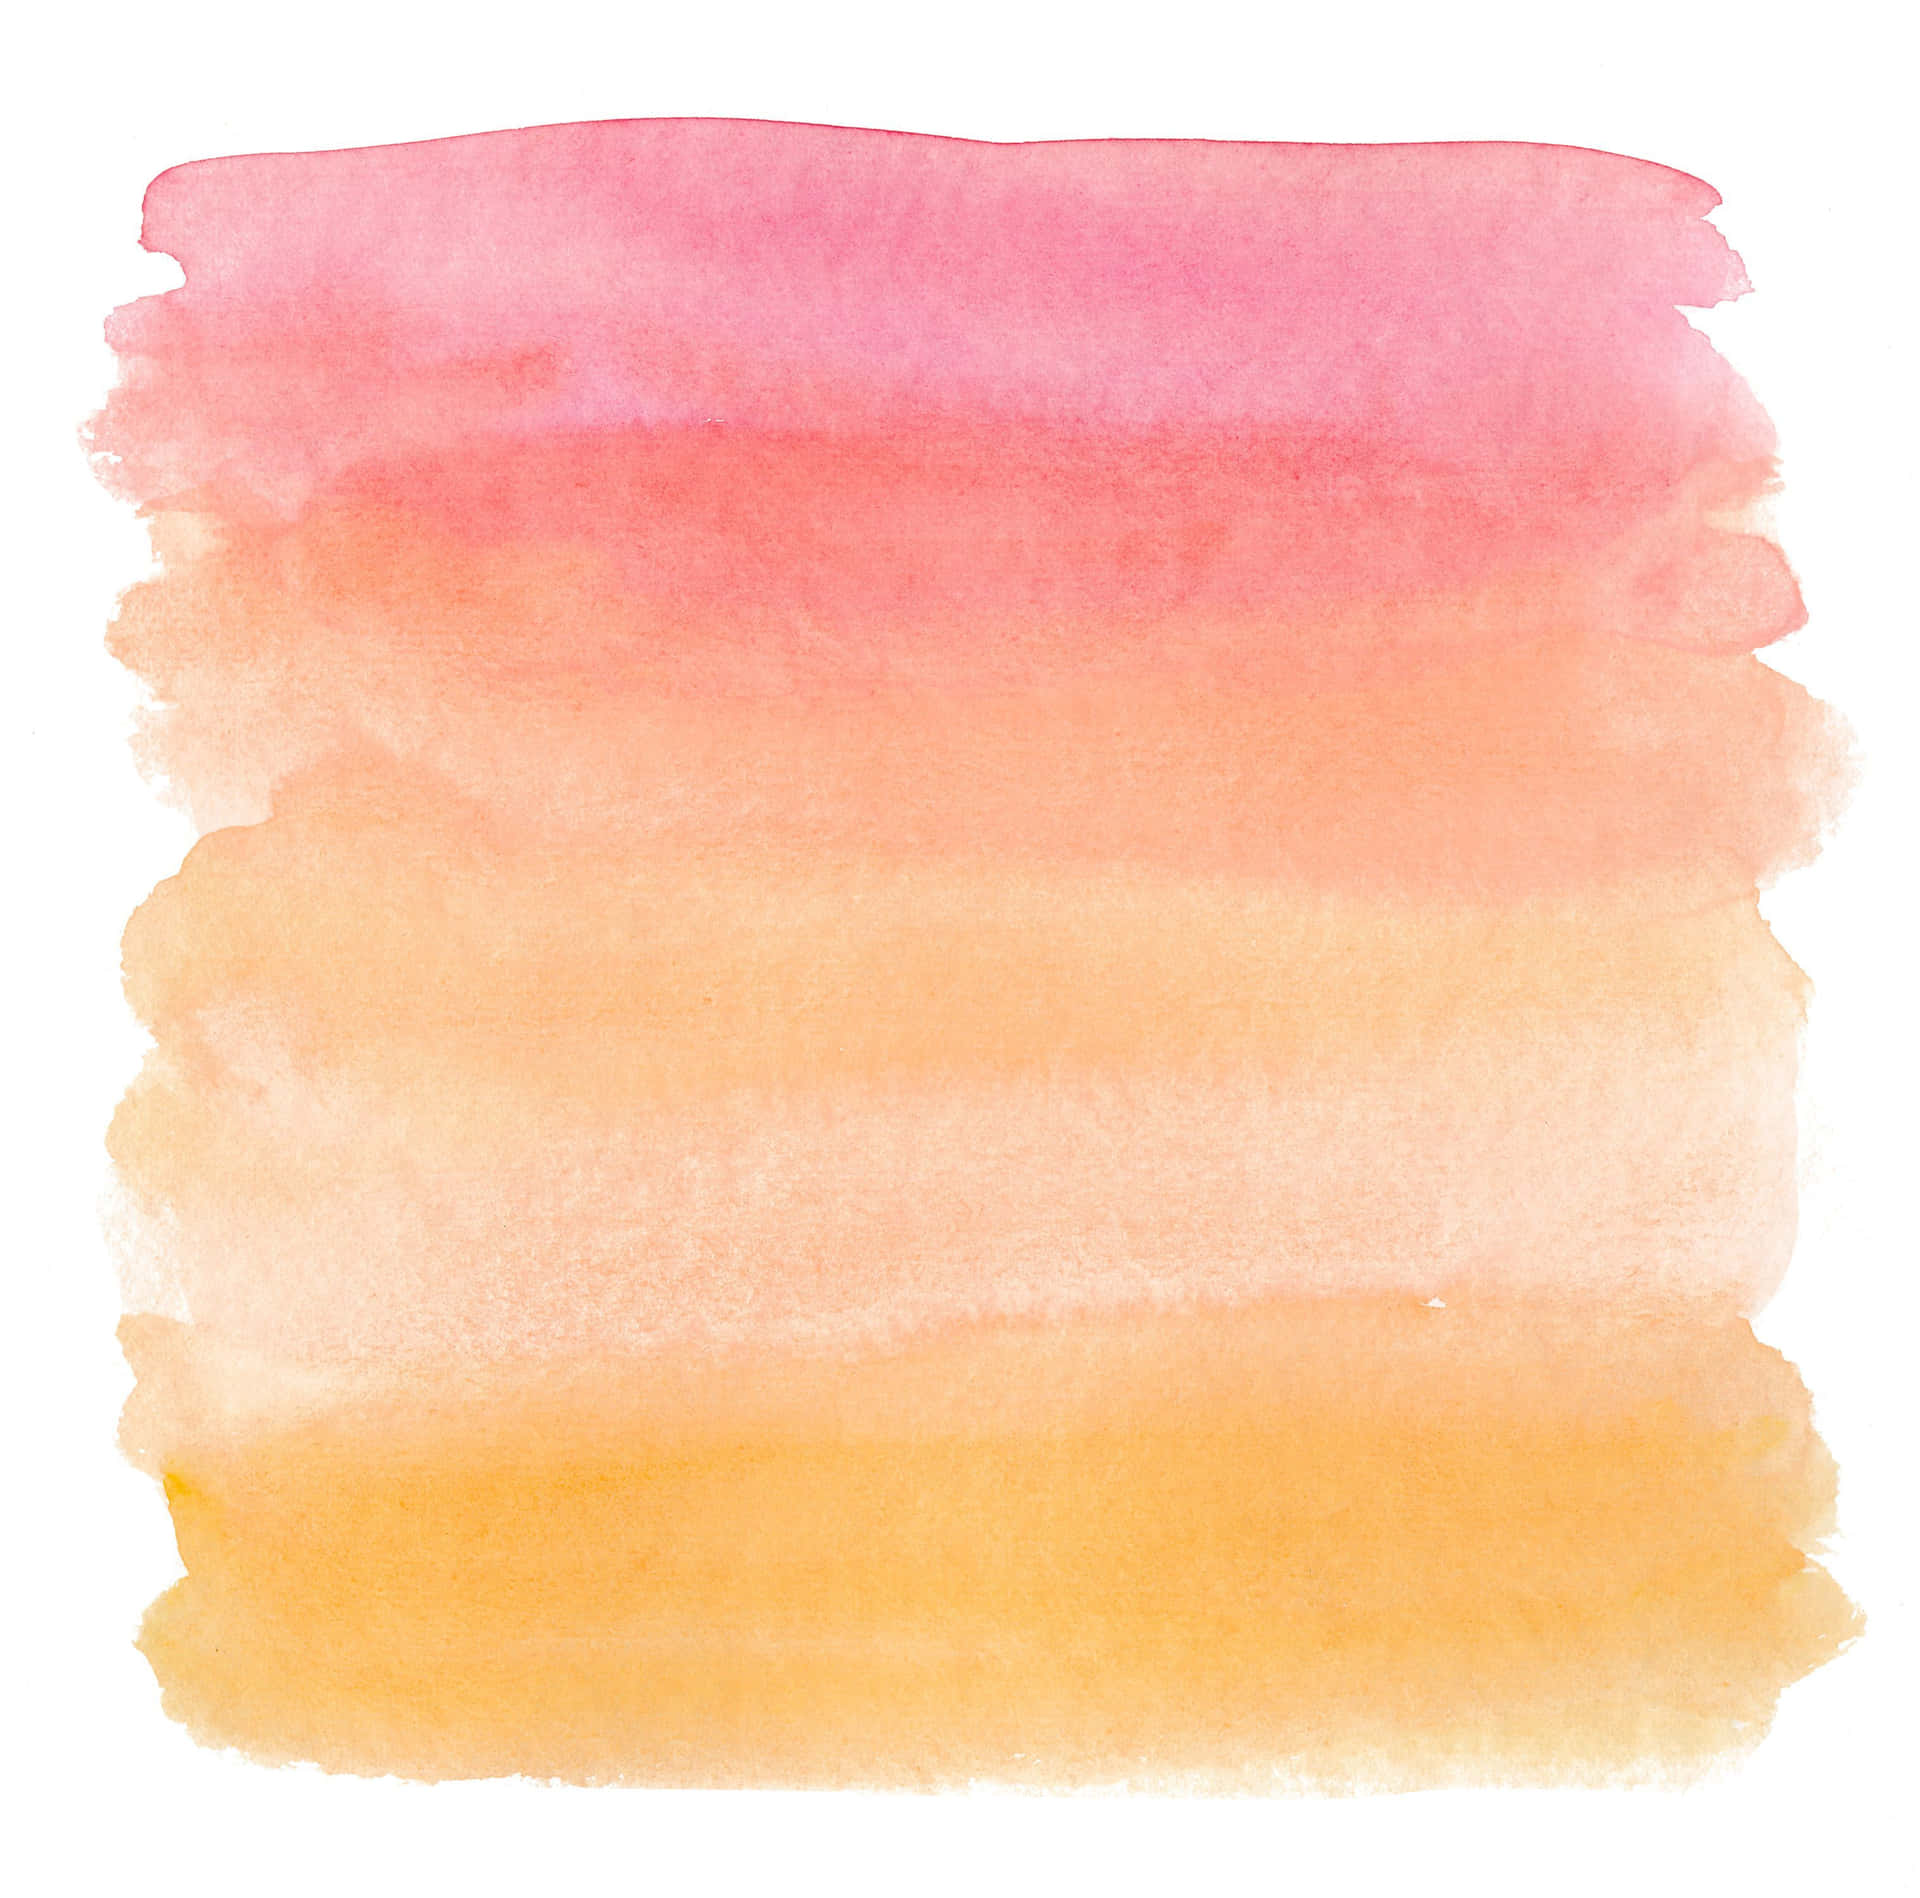 Diefarben Verschmelzen Miteinander Zu Einem Ätherischen Pastell-aquarell. Wallpaper